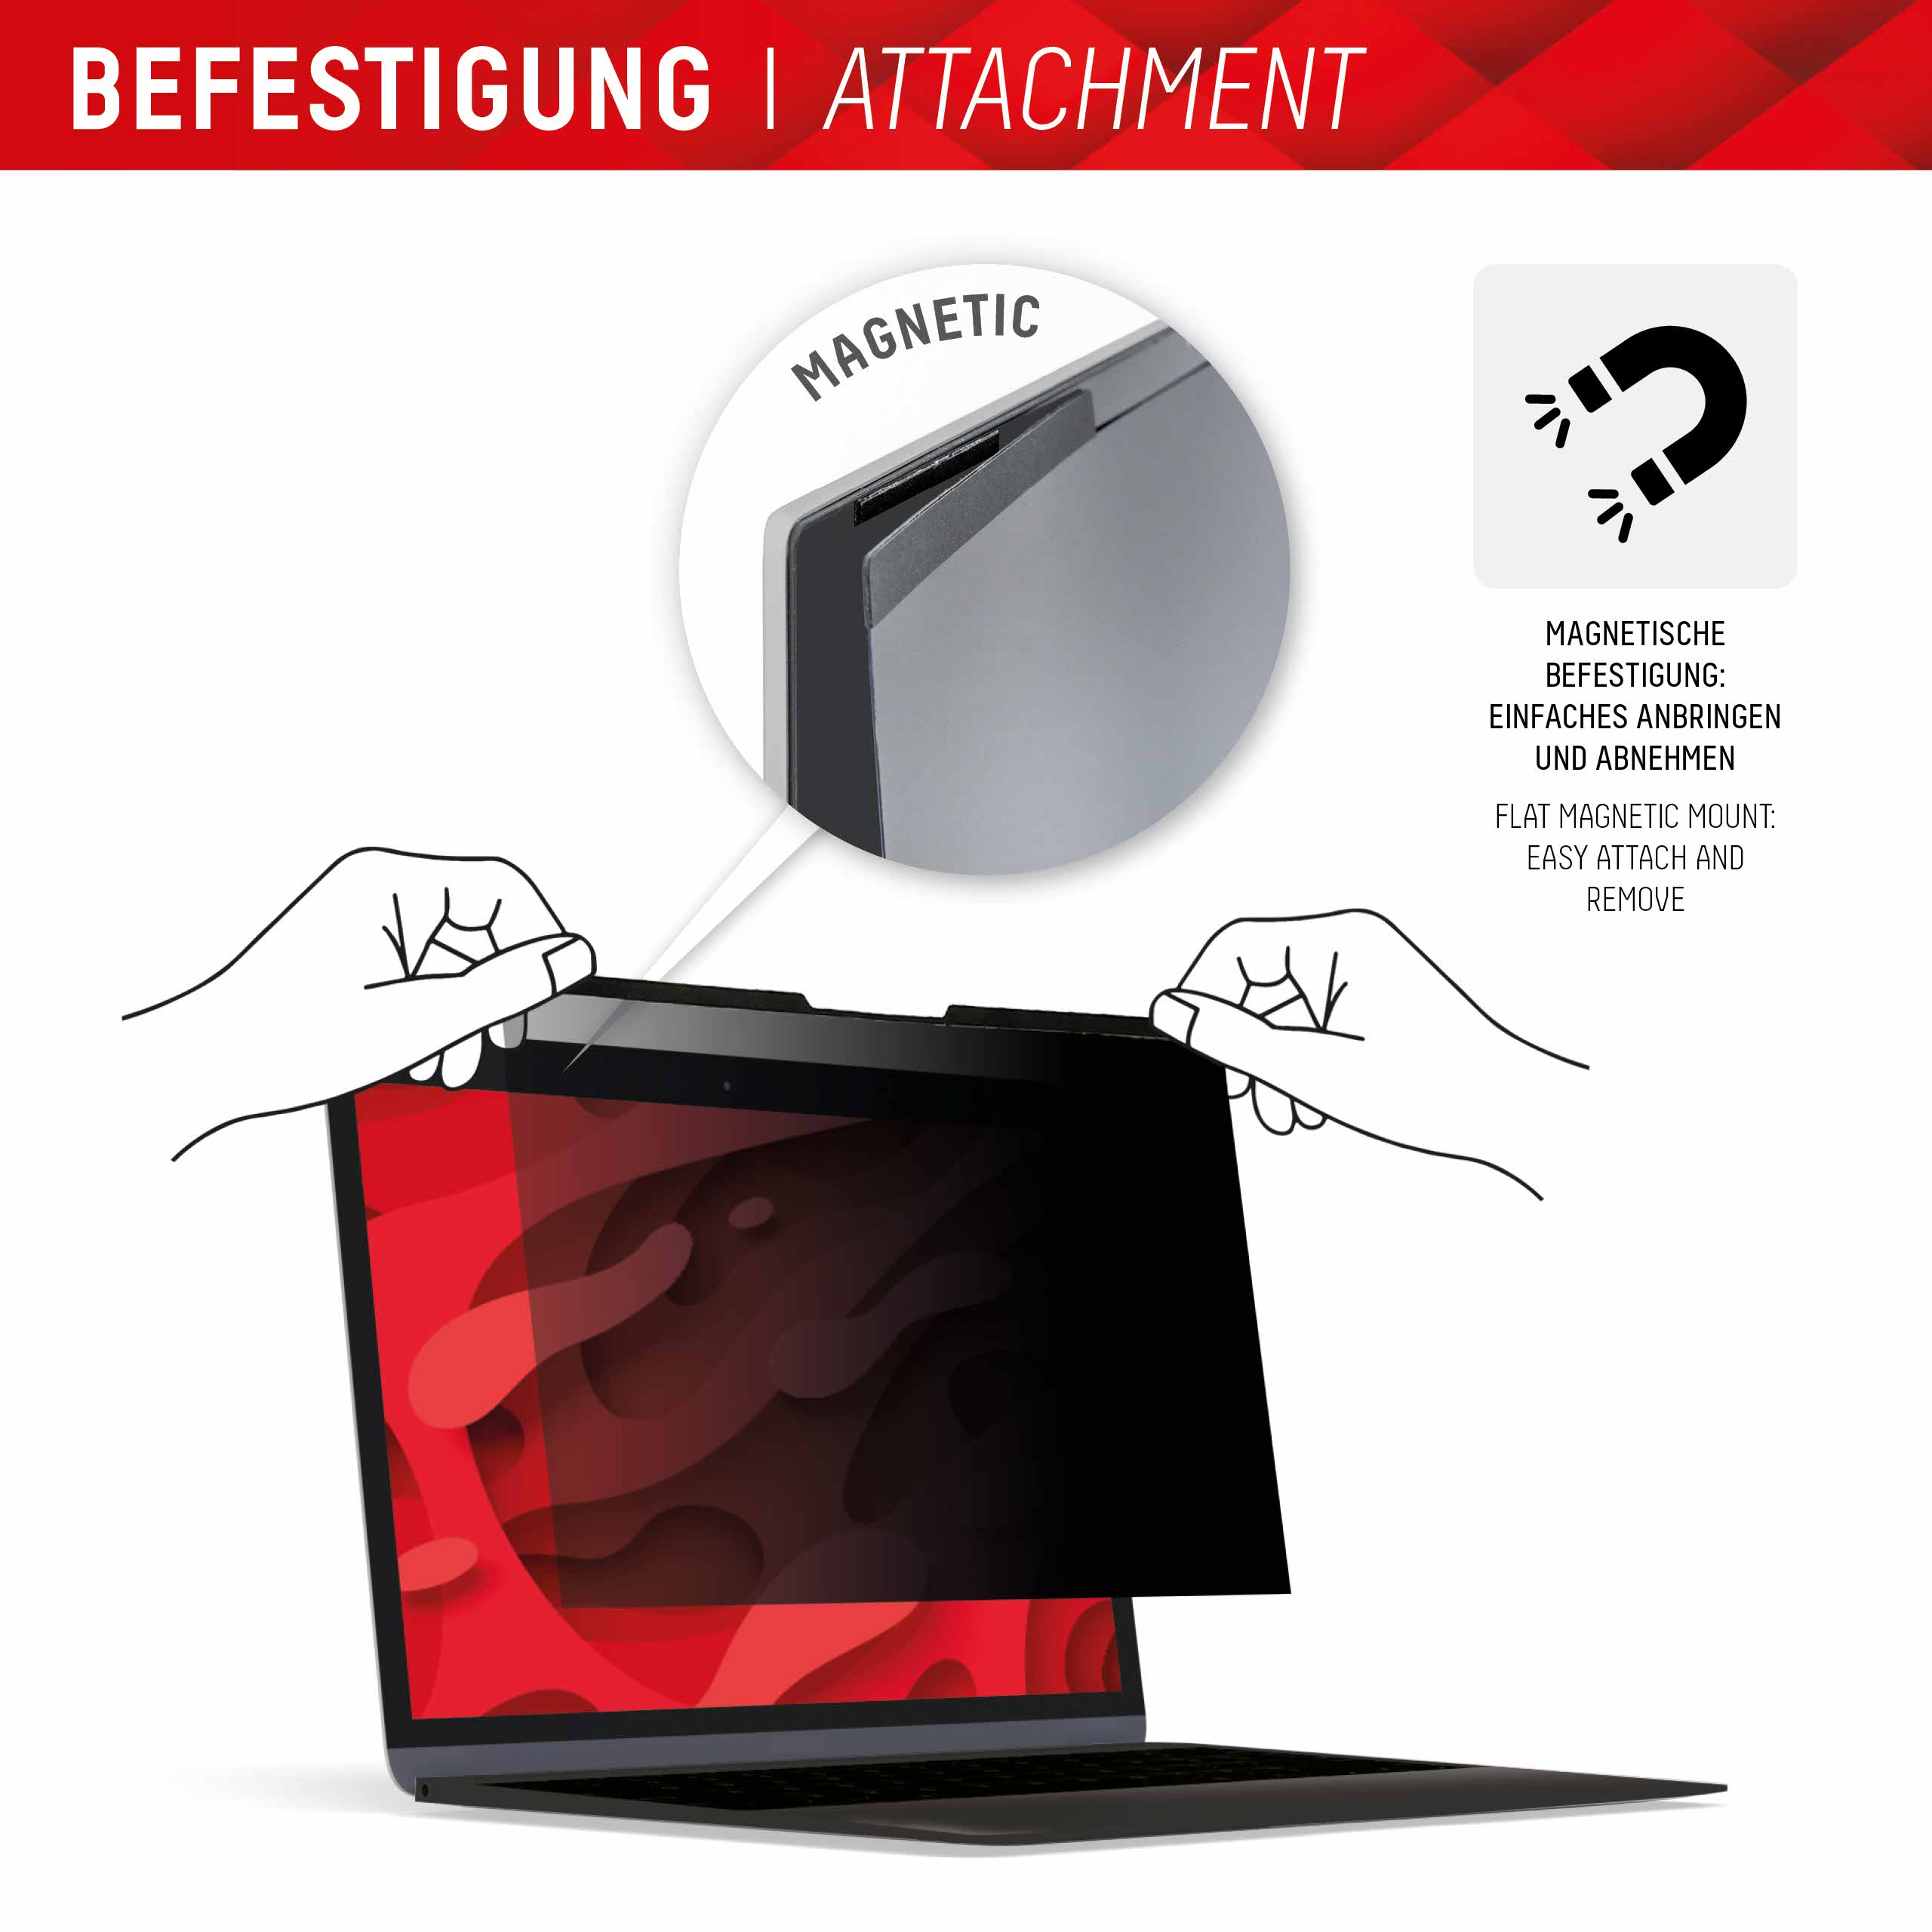 PRIVACY SAFE Magnetischer 2-Wege Blickschutzfilter für Laptop/ Notebook 14'' (16:9)